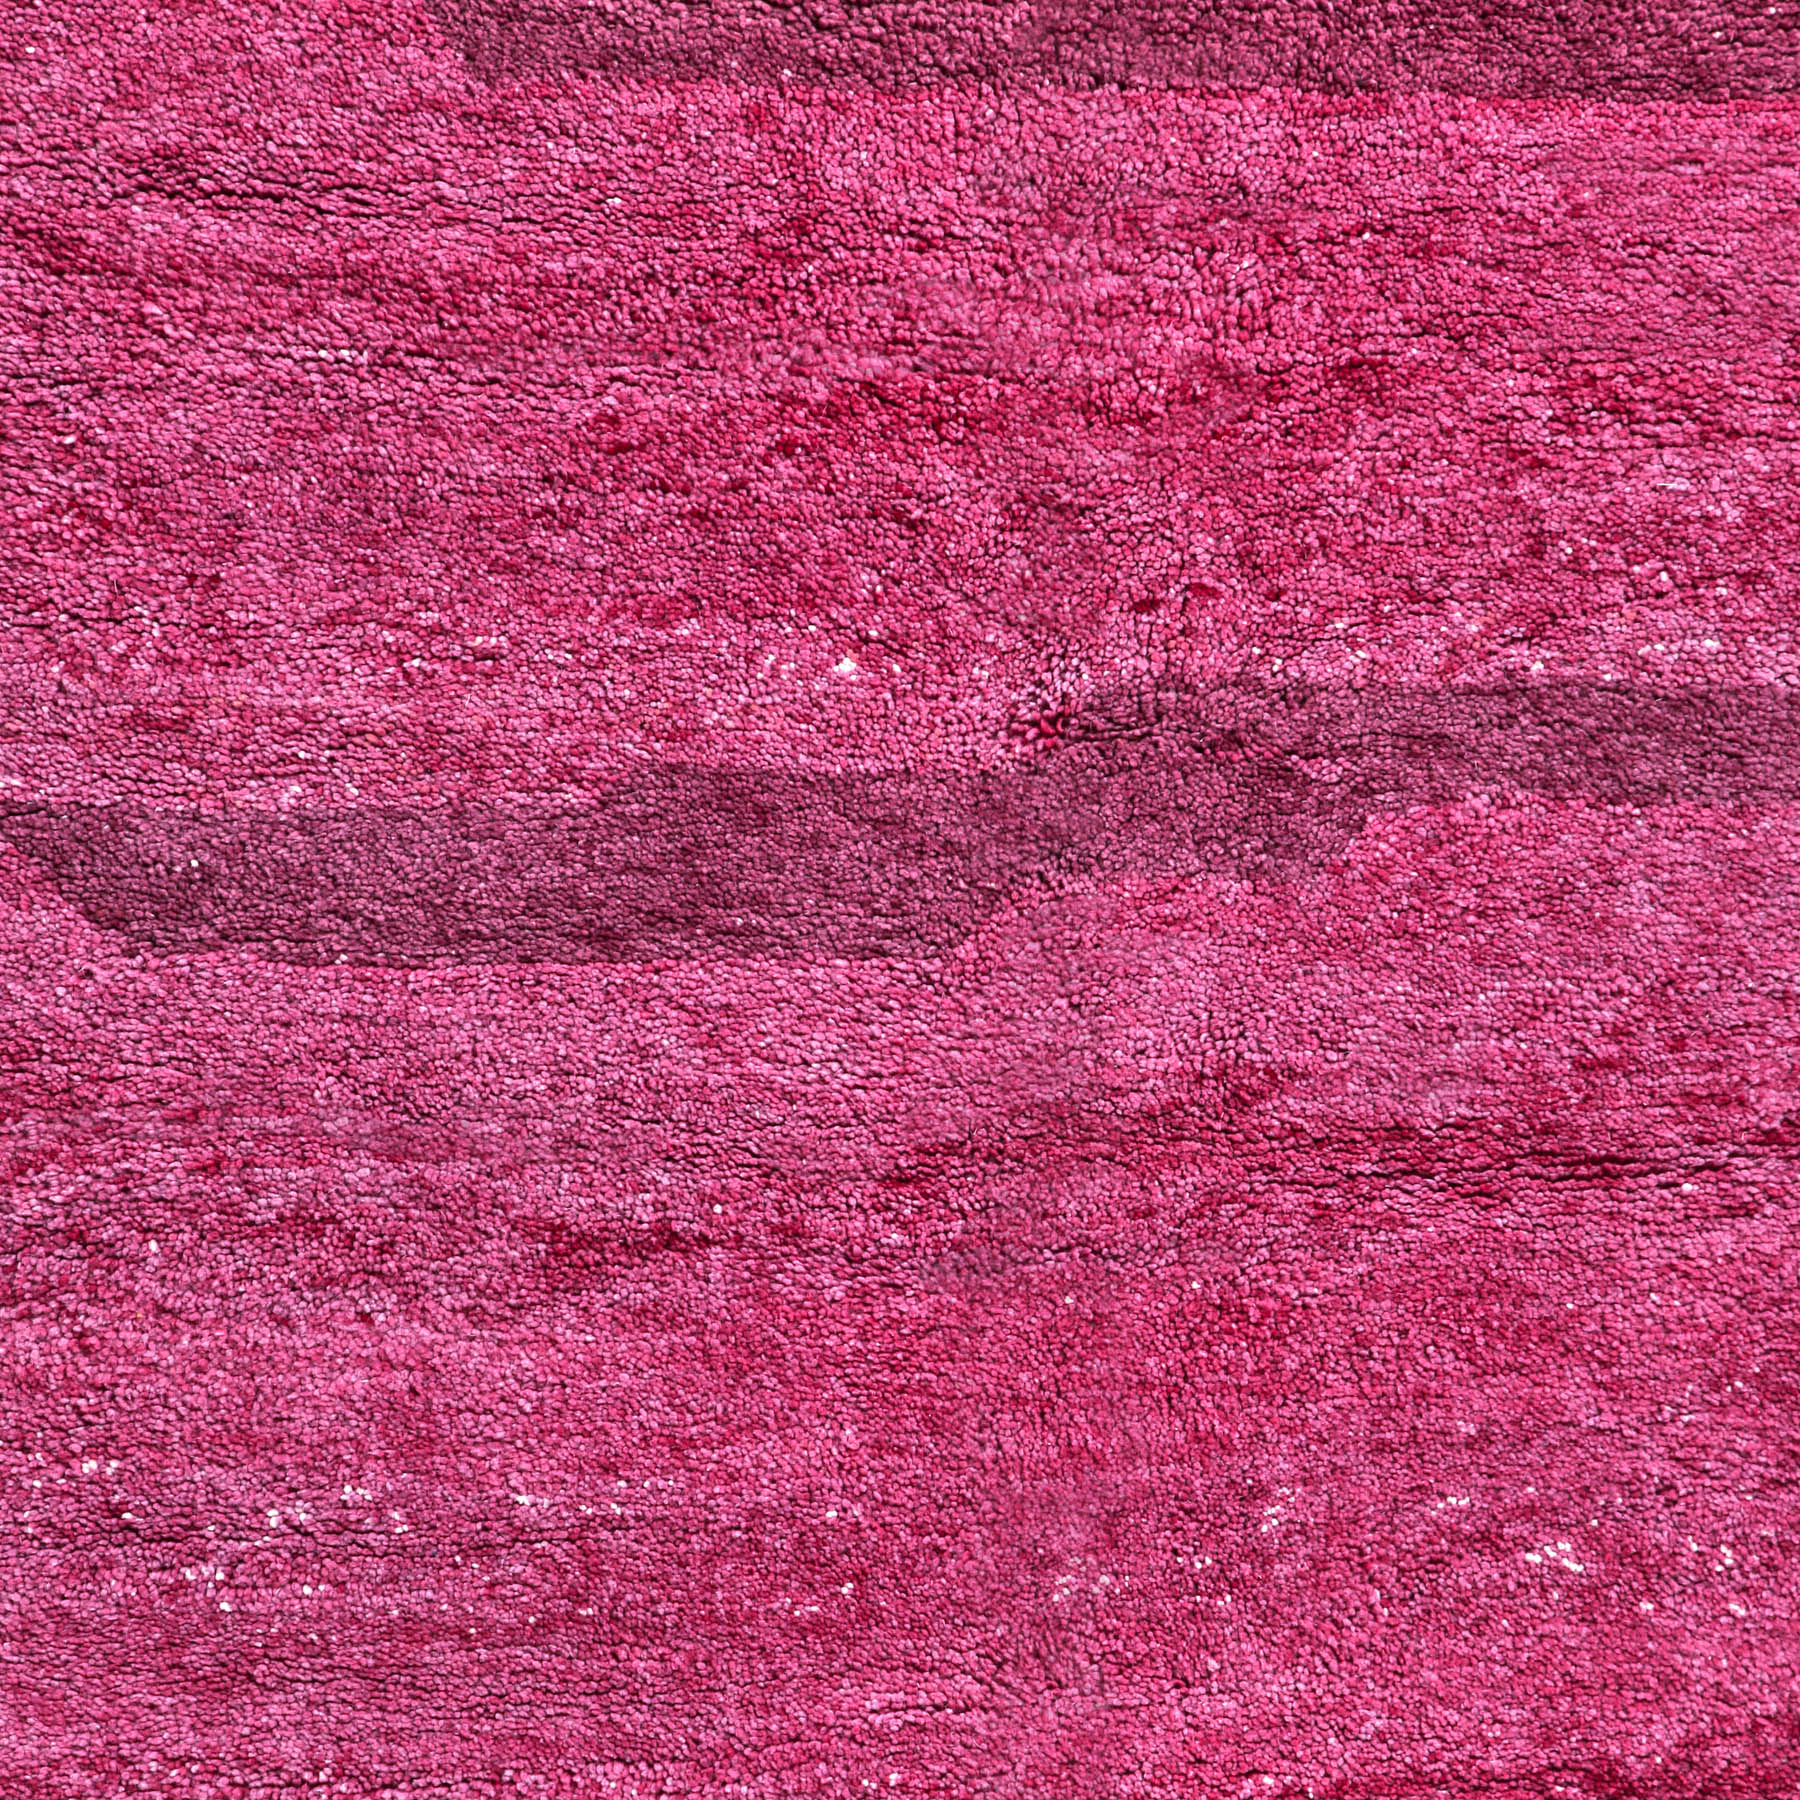 dettaglio delle sfumature colore bordeaux di un tappeto marocchino beni ourain realizzato a mano 